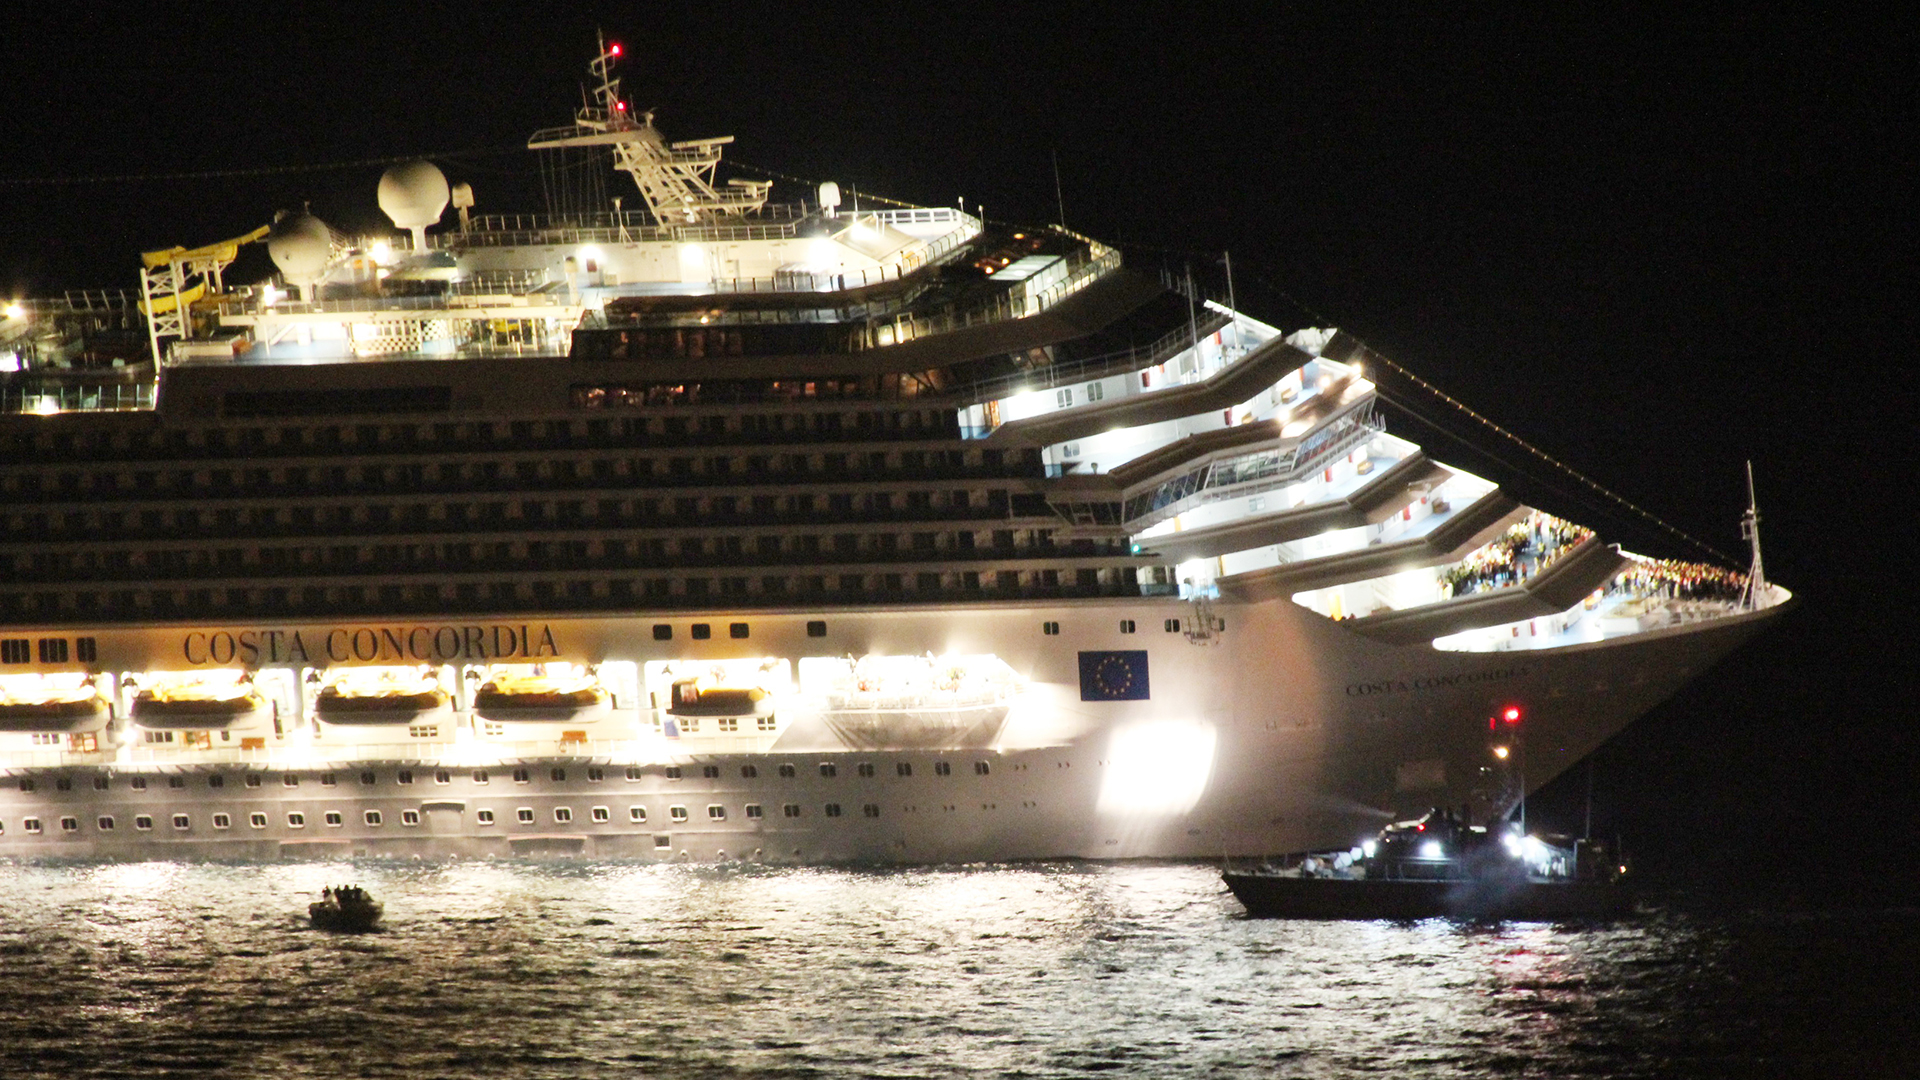 Das Kreuzfahrtschiff "Costa Concordia" liegt vor der toskanischen Küste nahe der italienischen Insel Giglio schräg im Wasser. | picture alliance / dpa